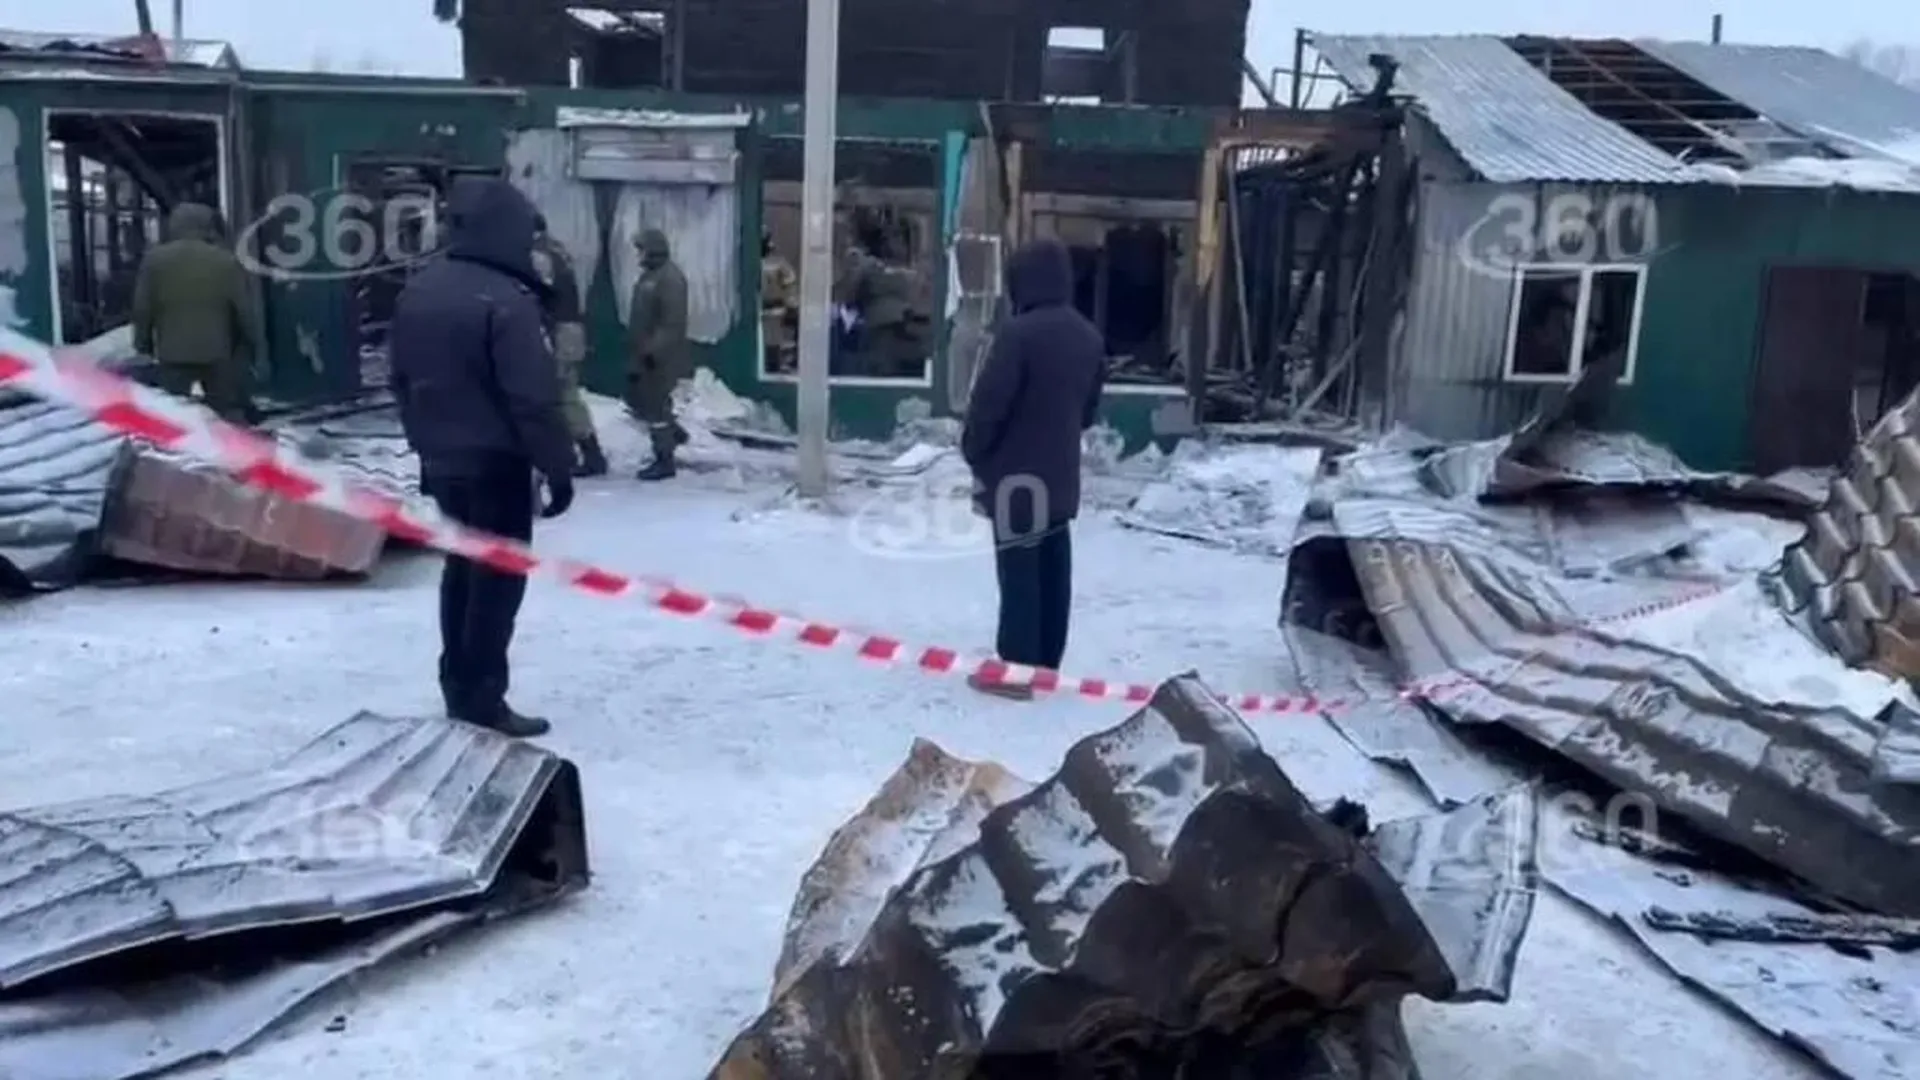 Частные приюты предложили лицензировать после пожара в Кемерове